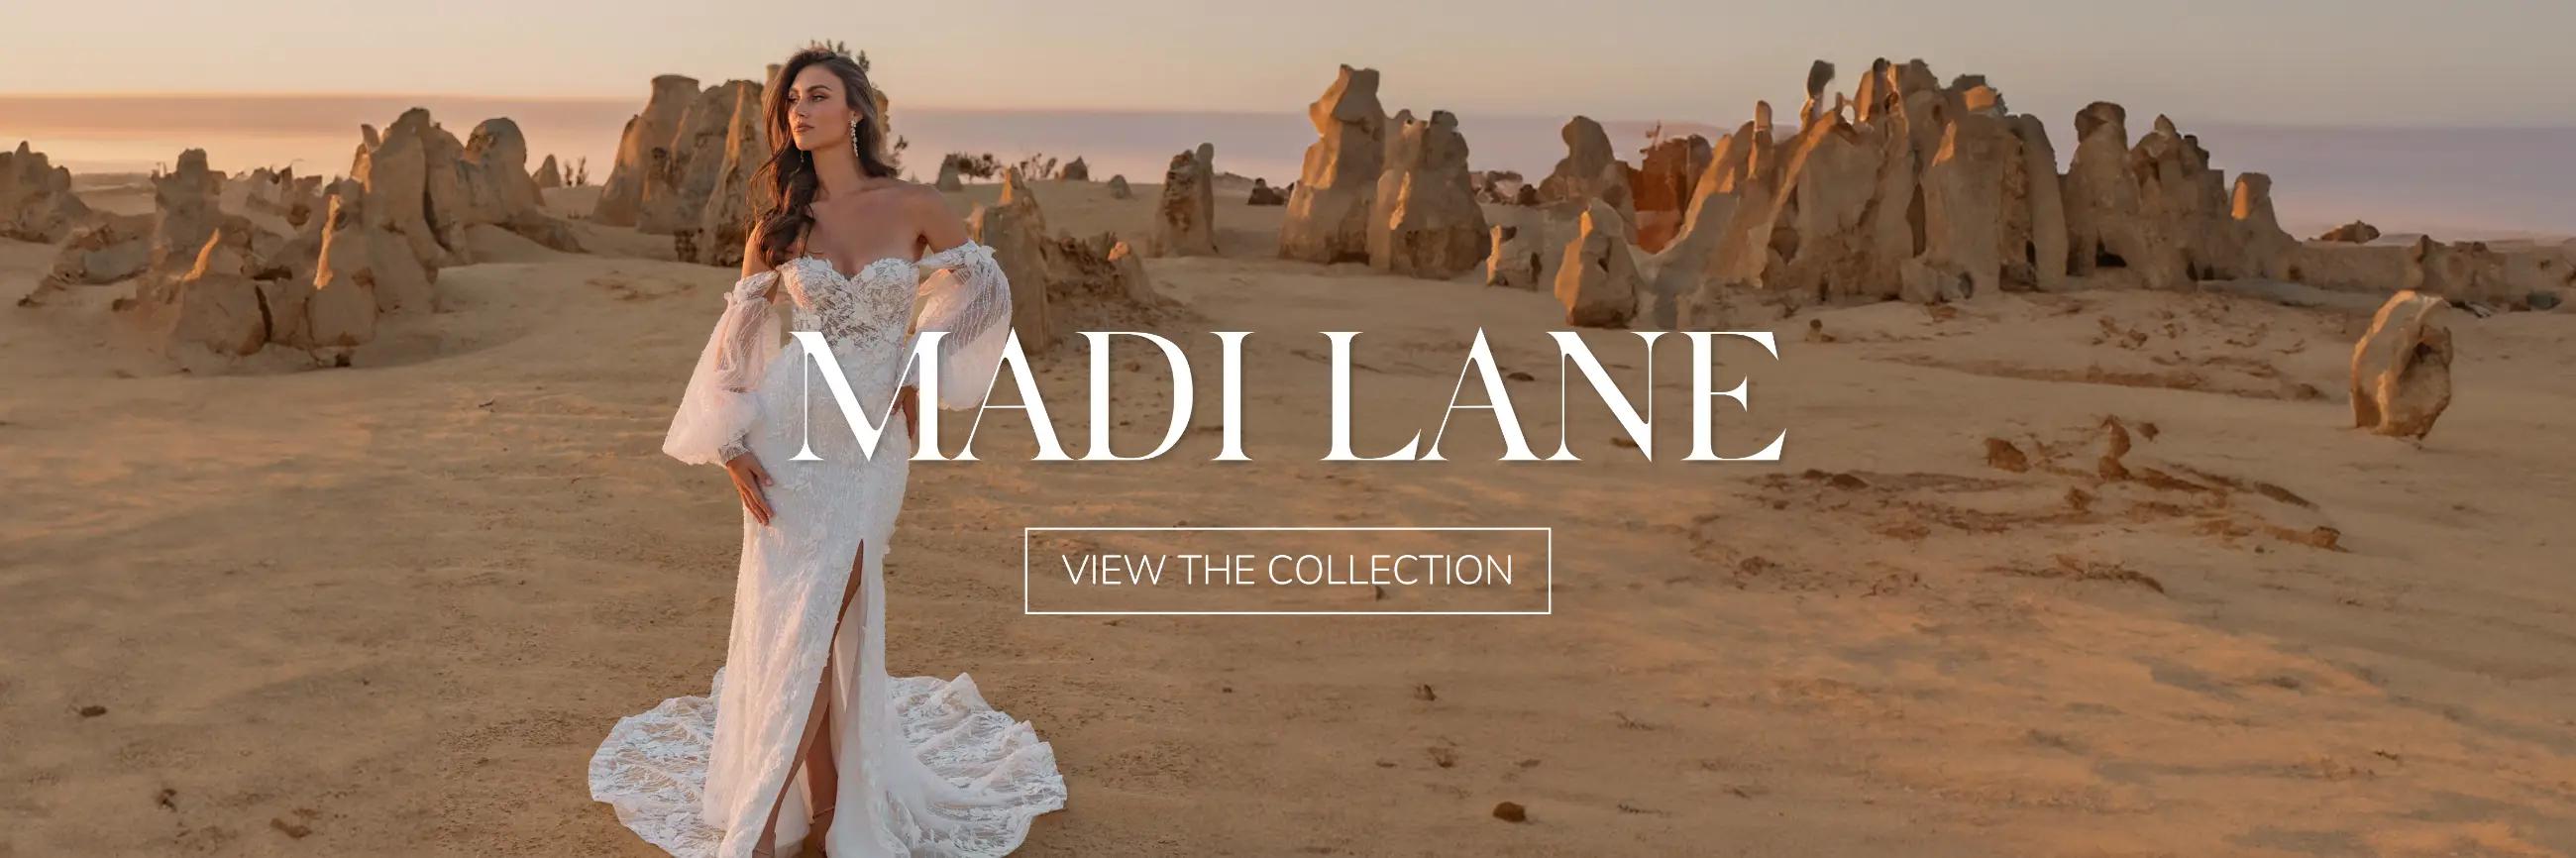 Madi Lane Wedding Dresses